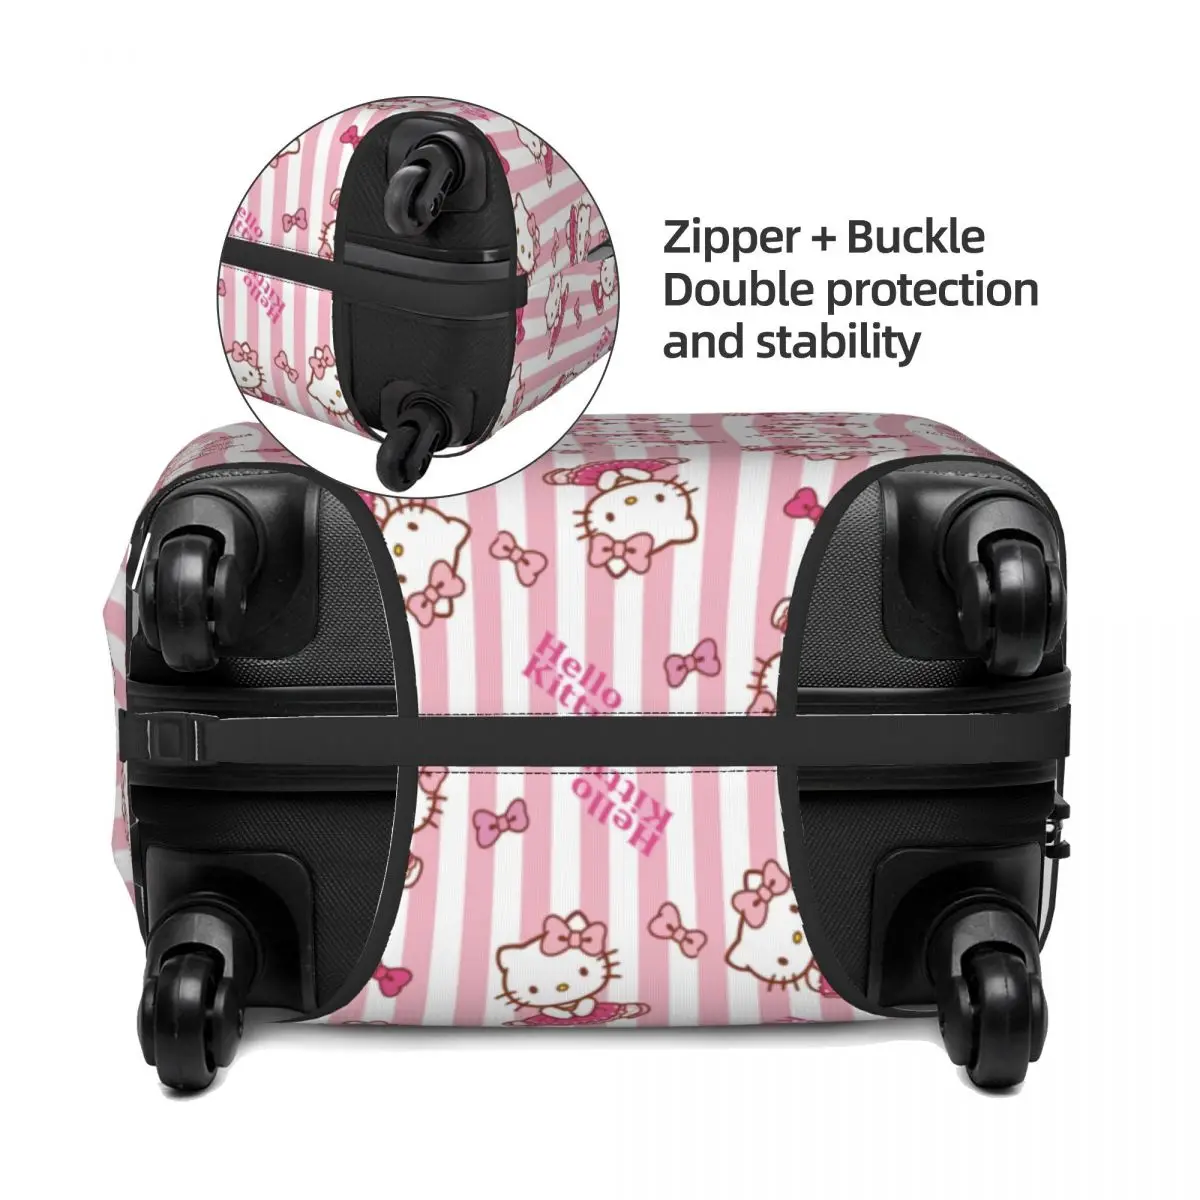 Spersonalizowany ochraniacz na pokrowiec na walizkę Hello Kitty pokrowiec na bagaż podróżny nadający się do prania w Cal 18-32